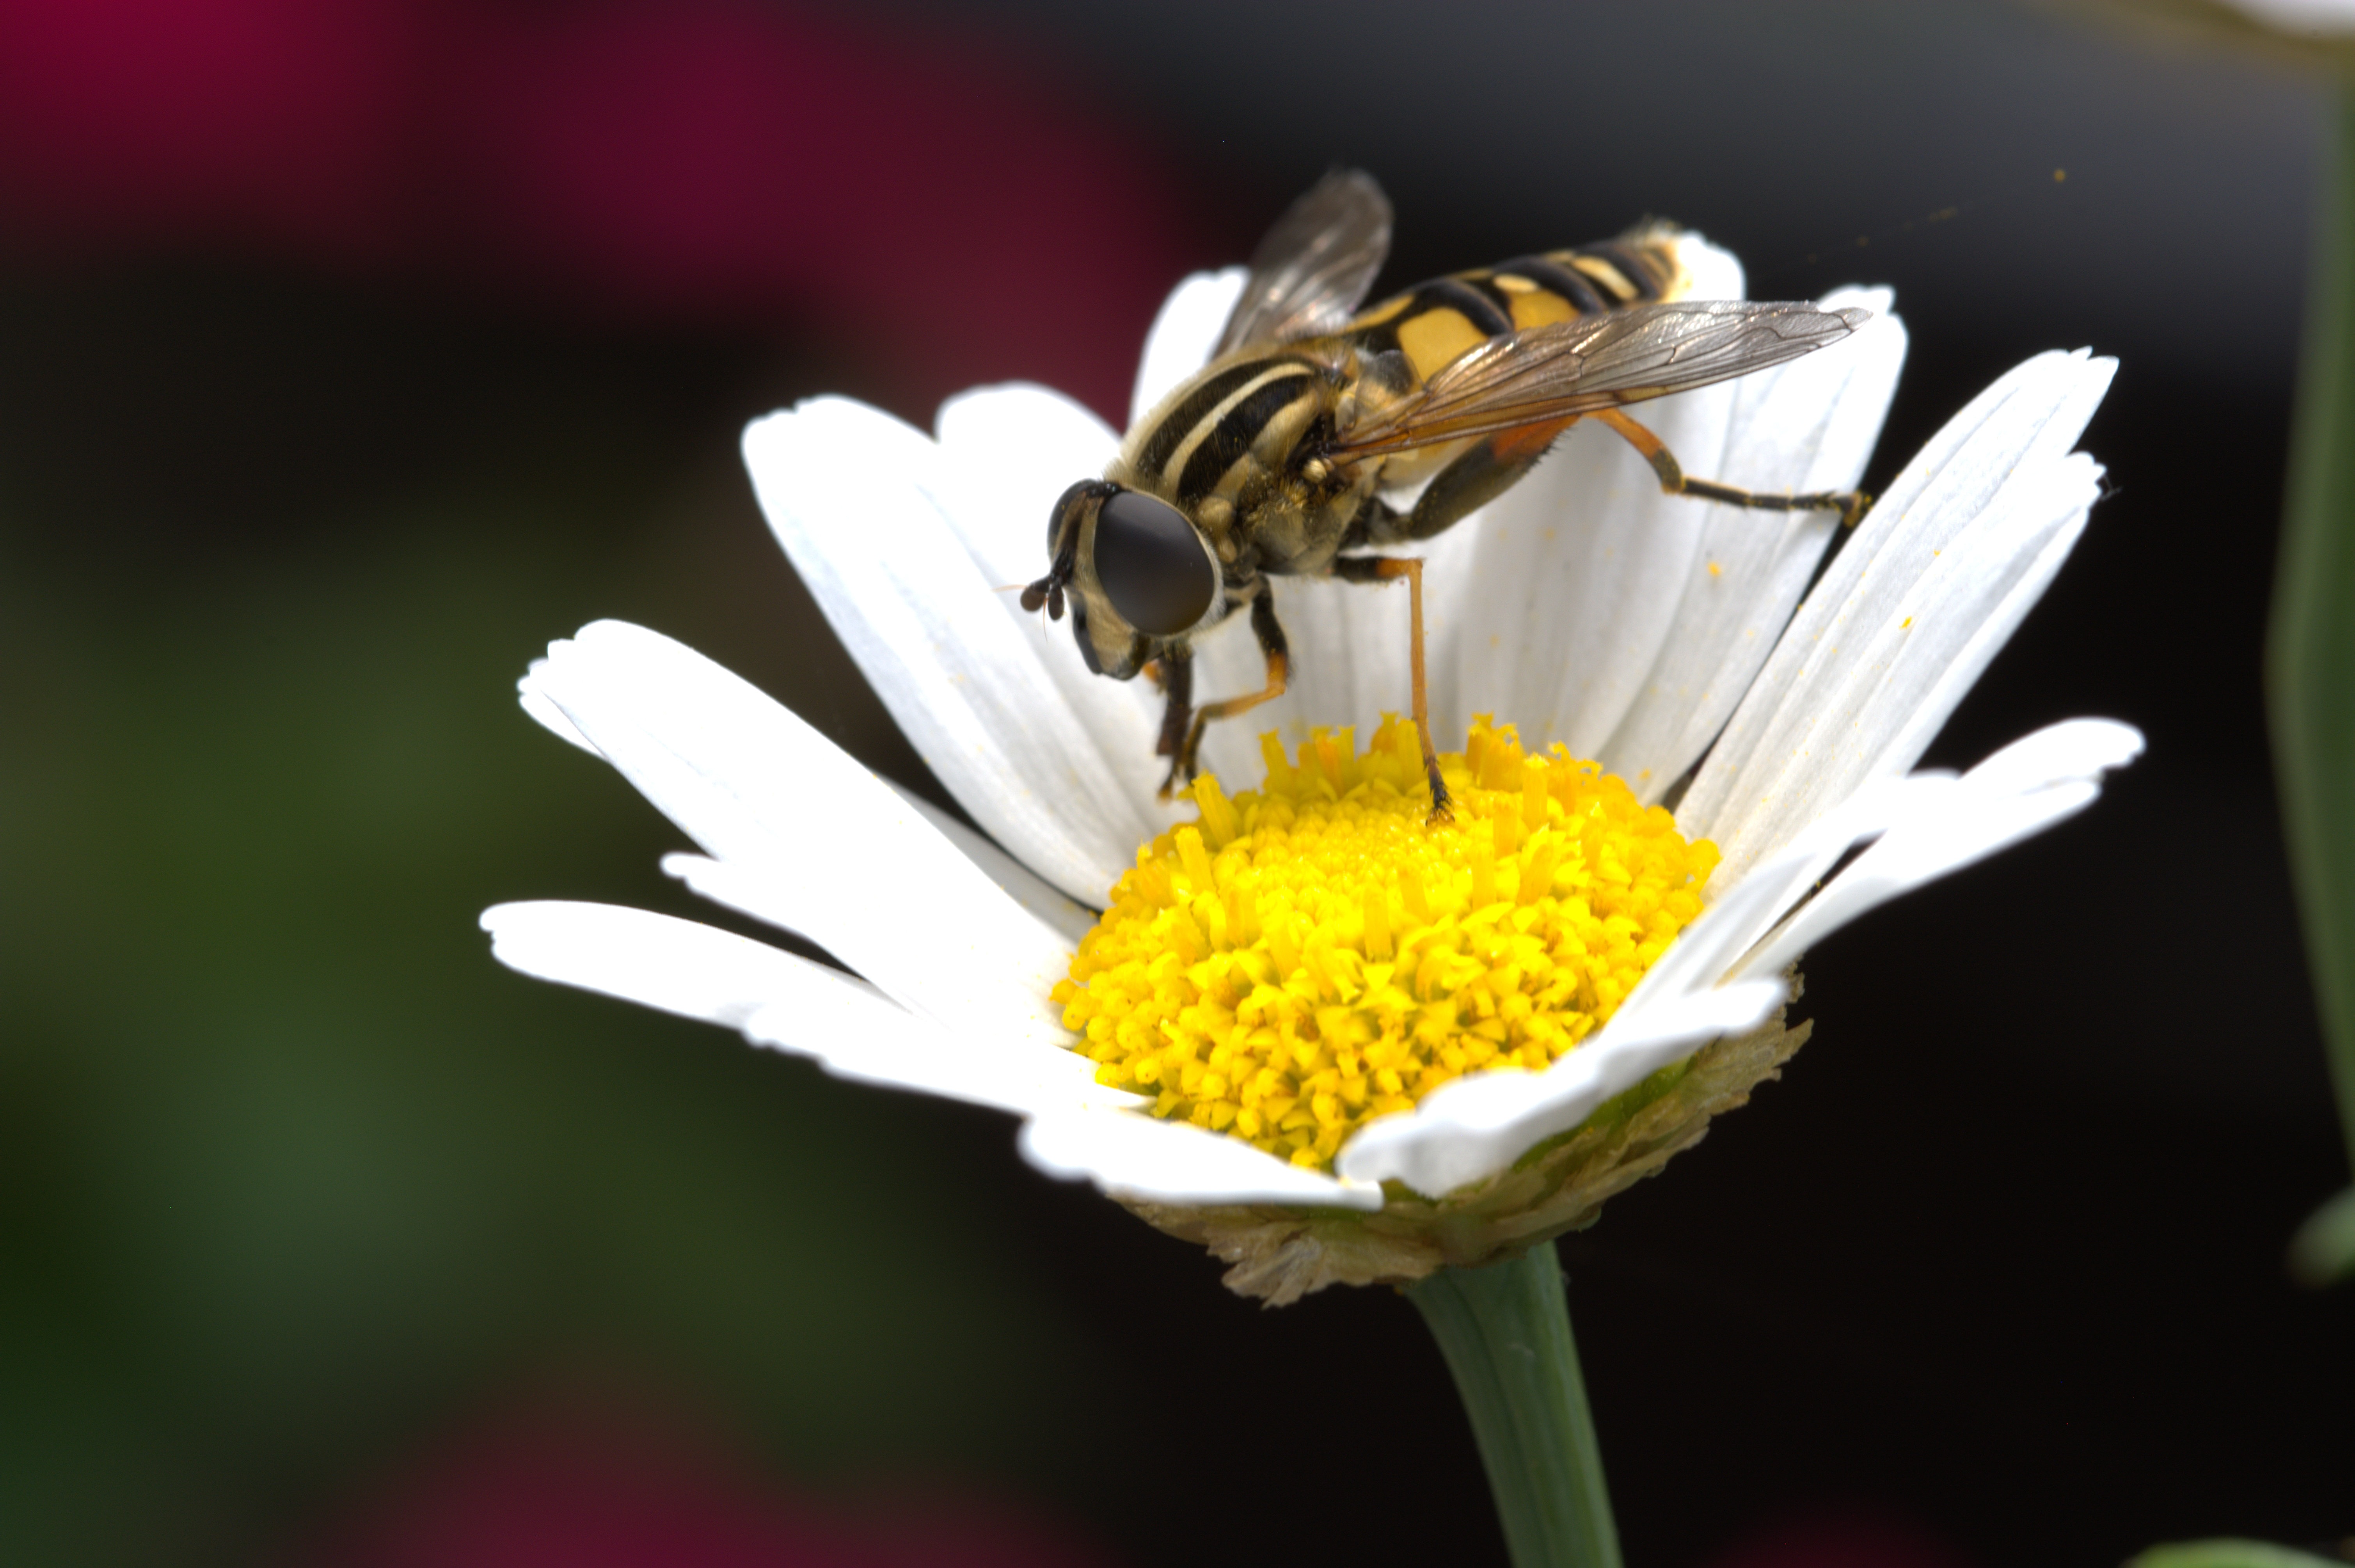 Скачать обои бесплатно Опыление, Пчела, Макро, Цветок, Ромашка картинка на рабочий стол ПК